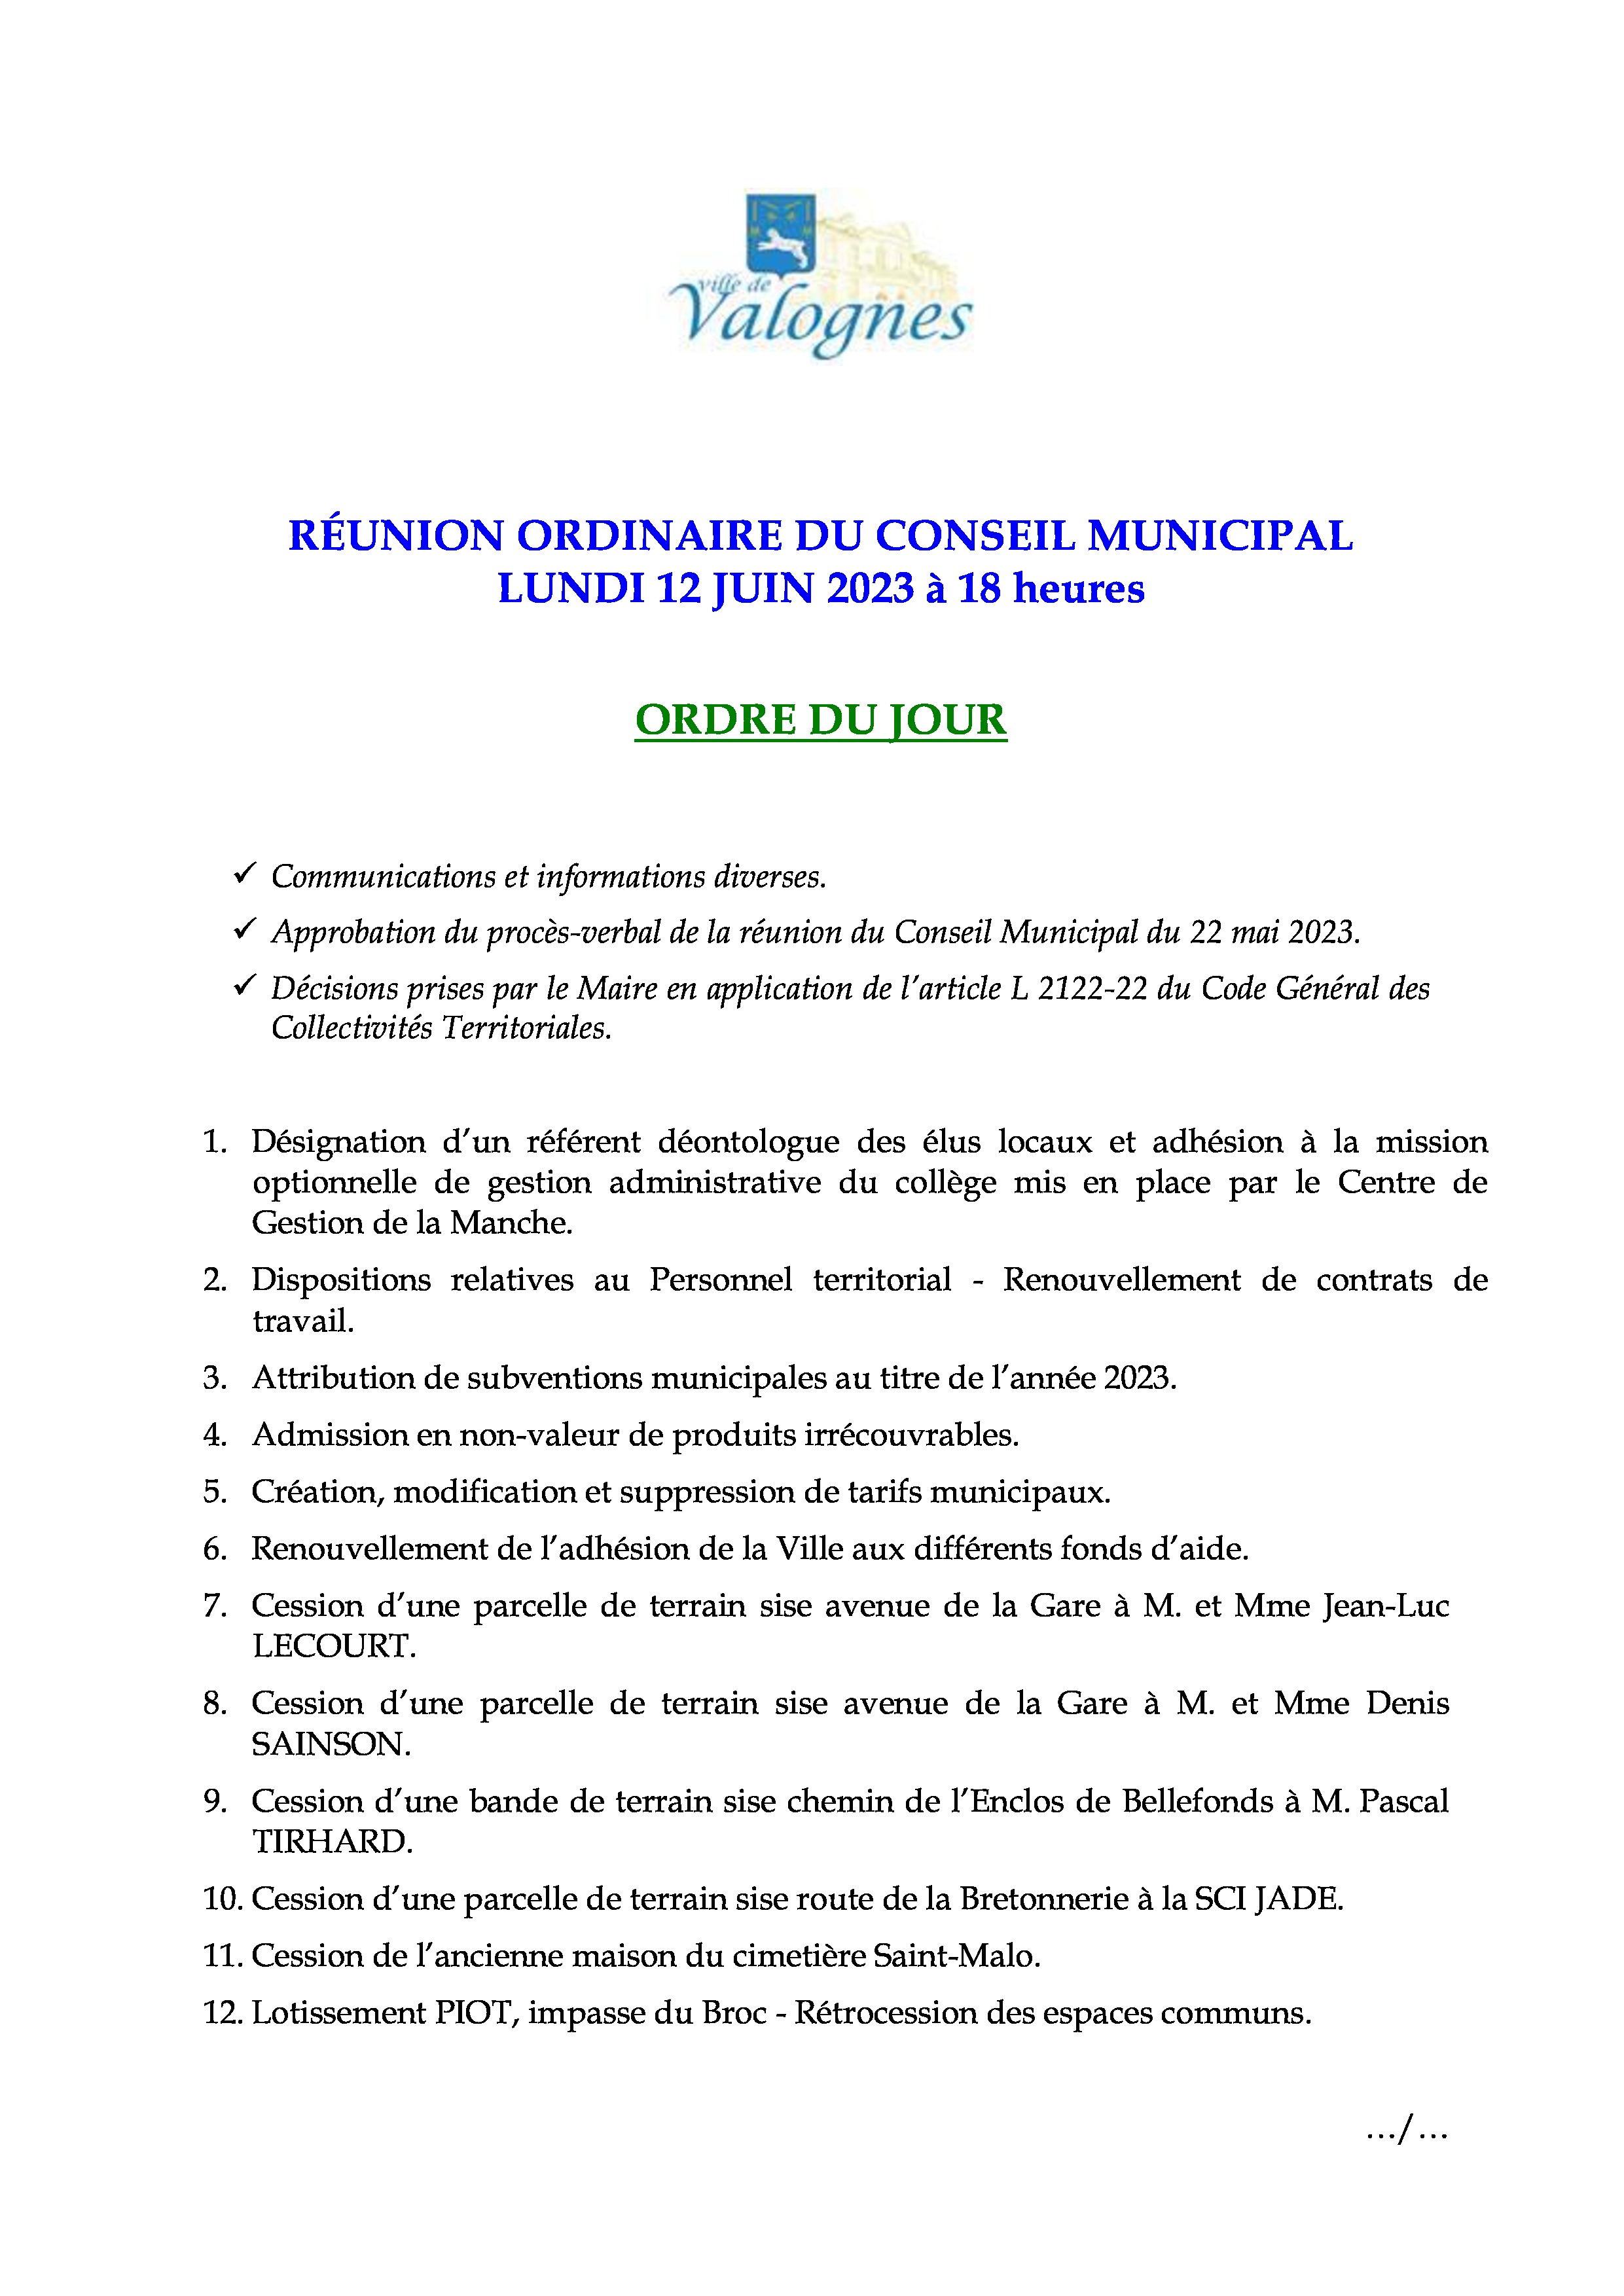 Prochaine réunion de Conseil Municipal - La prochaine réunion du Conseil Municipal aura lieu lundi 12 juin 2023 à 18 heures - salle Henri Cornat. 
Ordre du jour annexé.